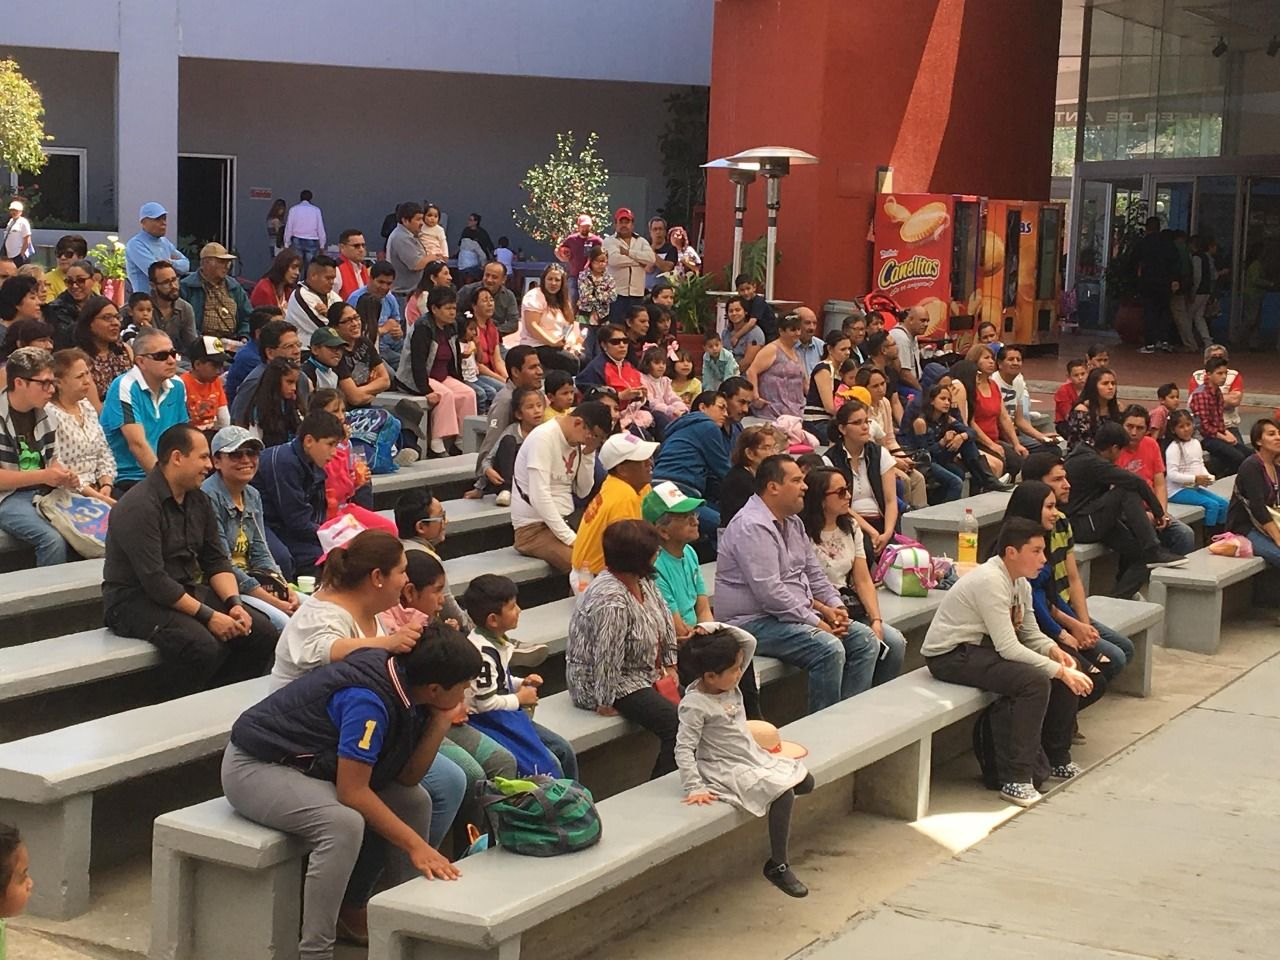 Centro cultural mexiquense ofrece opciones de esparcimiento familiar en domingo.